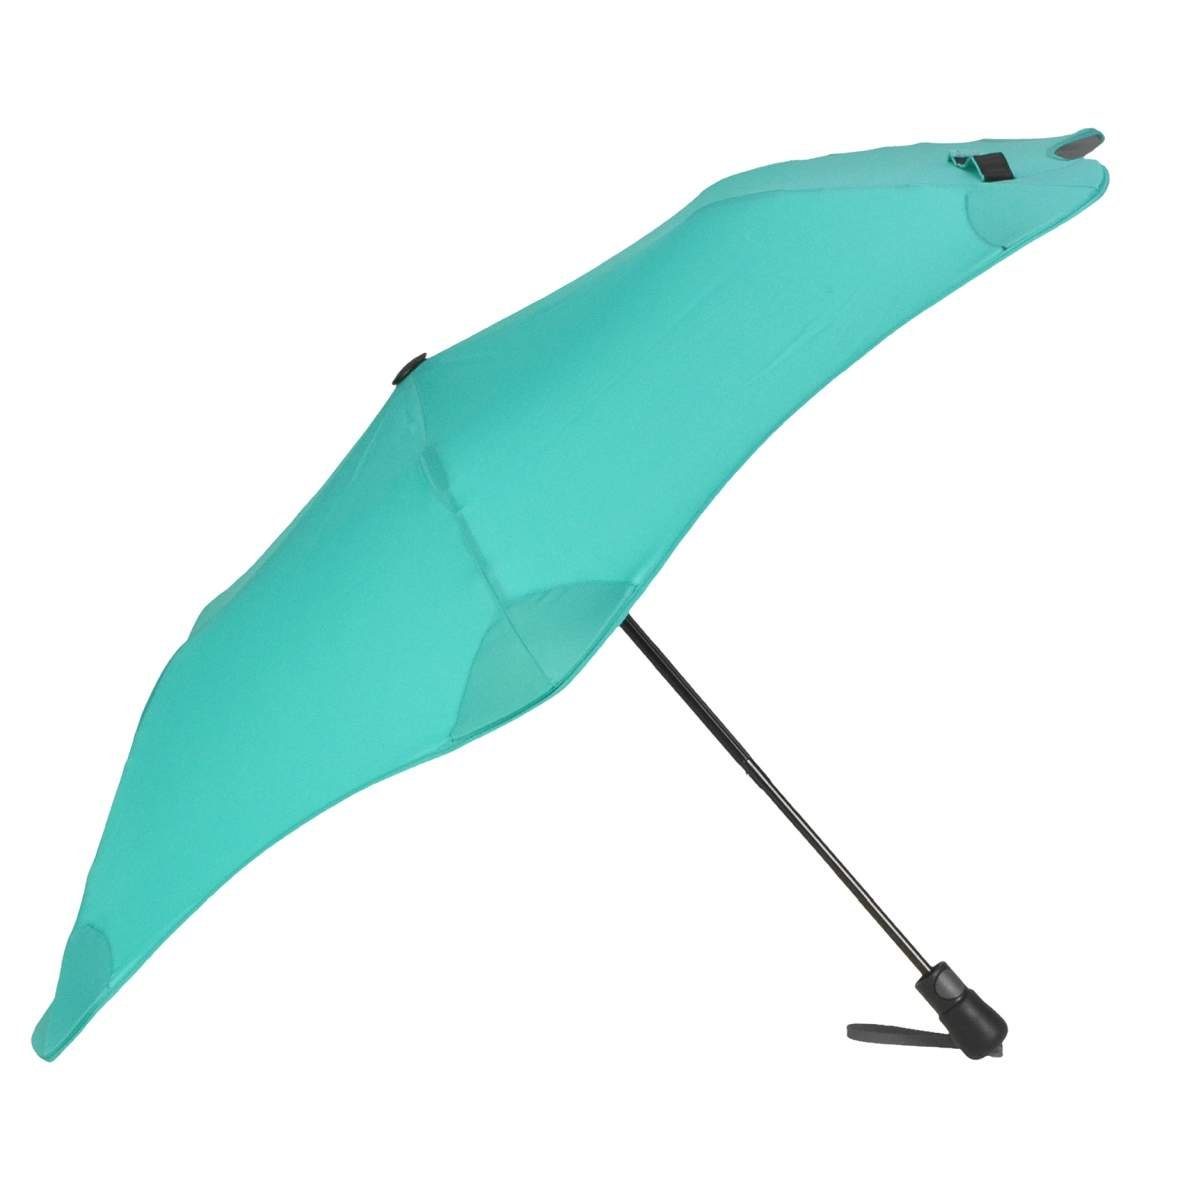 Blunt Taschenregenschirm Metro, Regenschirm, Taschenschirm, für Auto und unterwegs, 96cm Durchmesser mintgrün